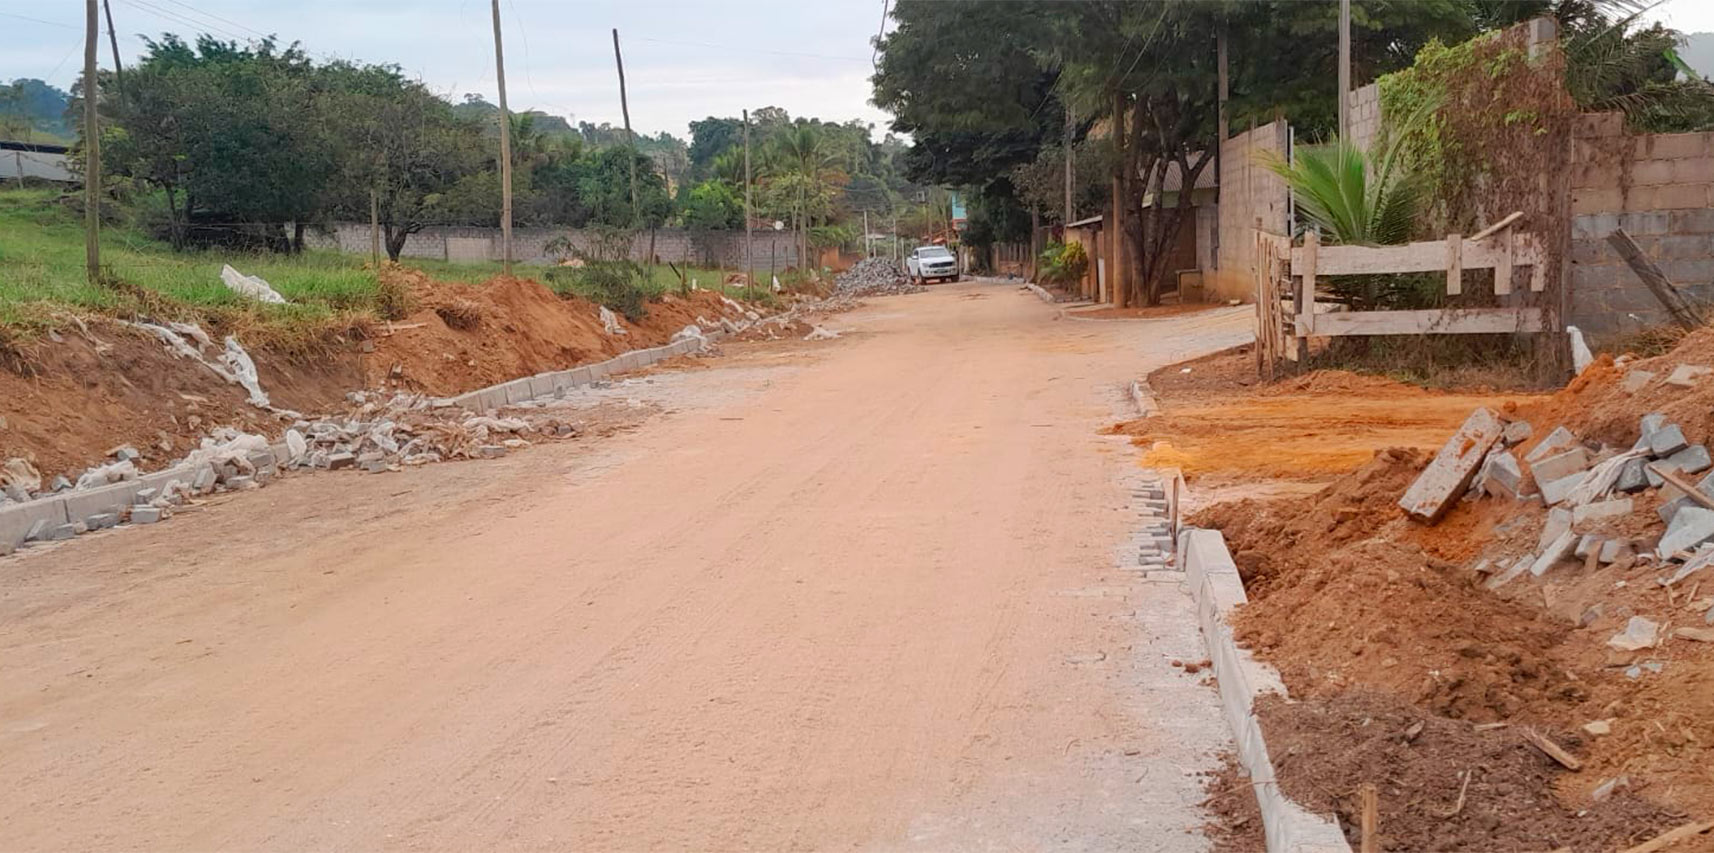 Programa Calçamento Rural avança com obras de pavimentação no distrito de Prosperidade, em Vargem Alta